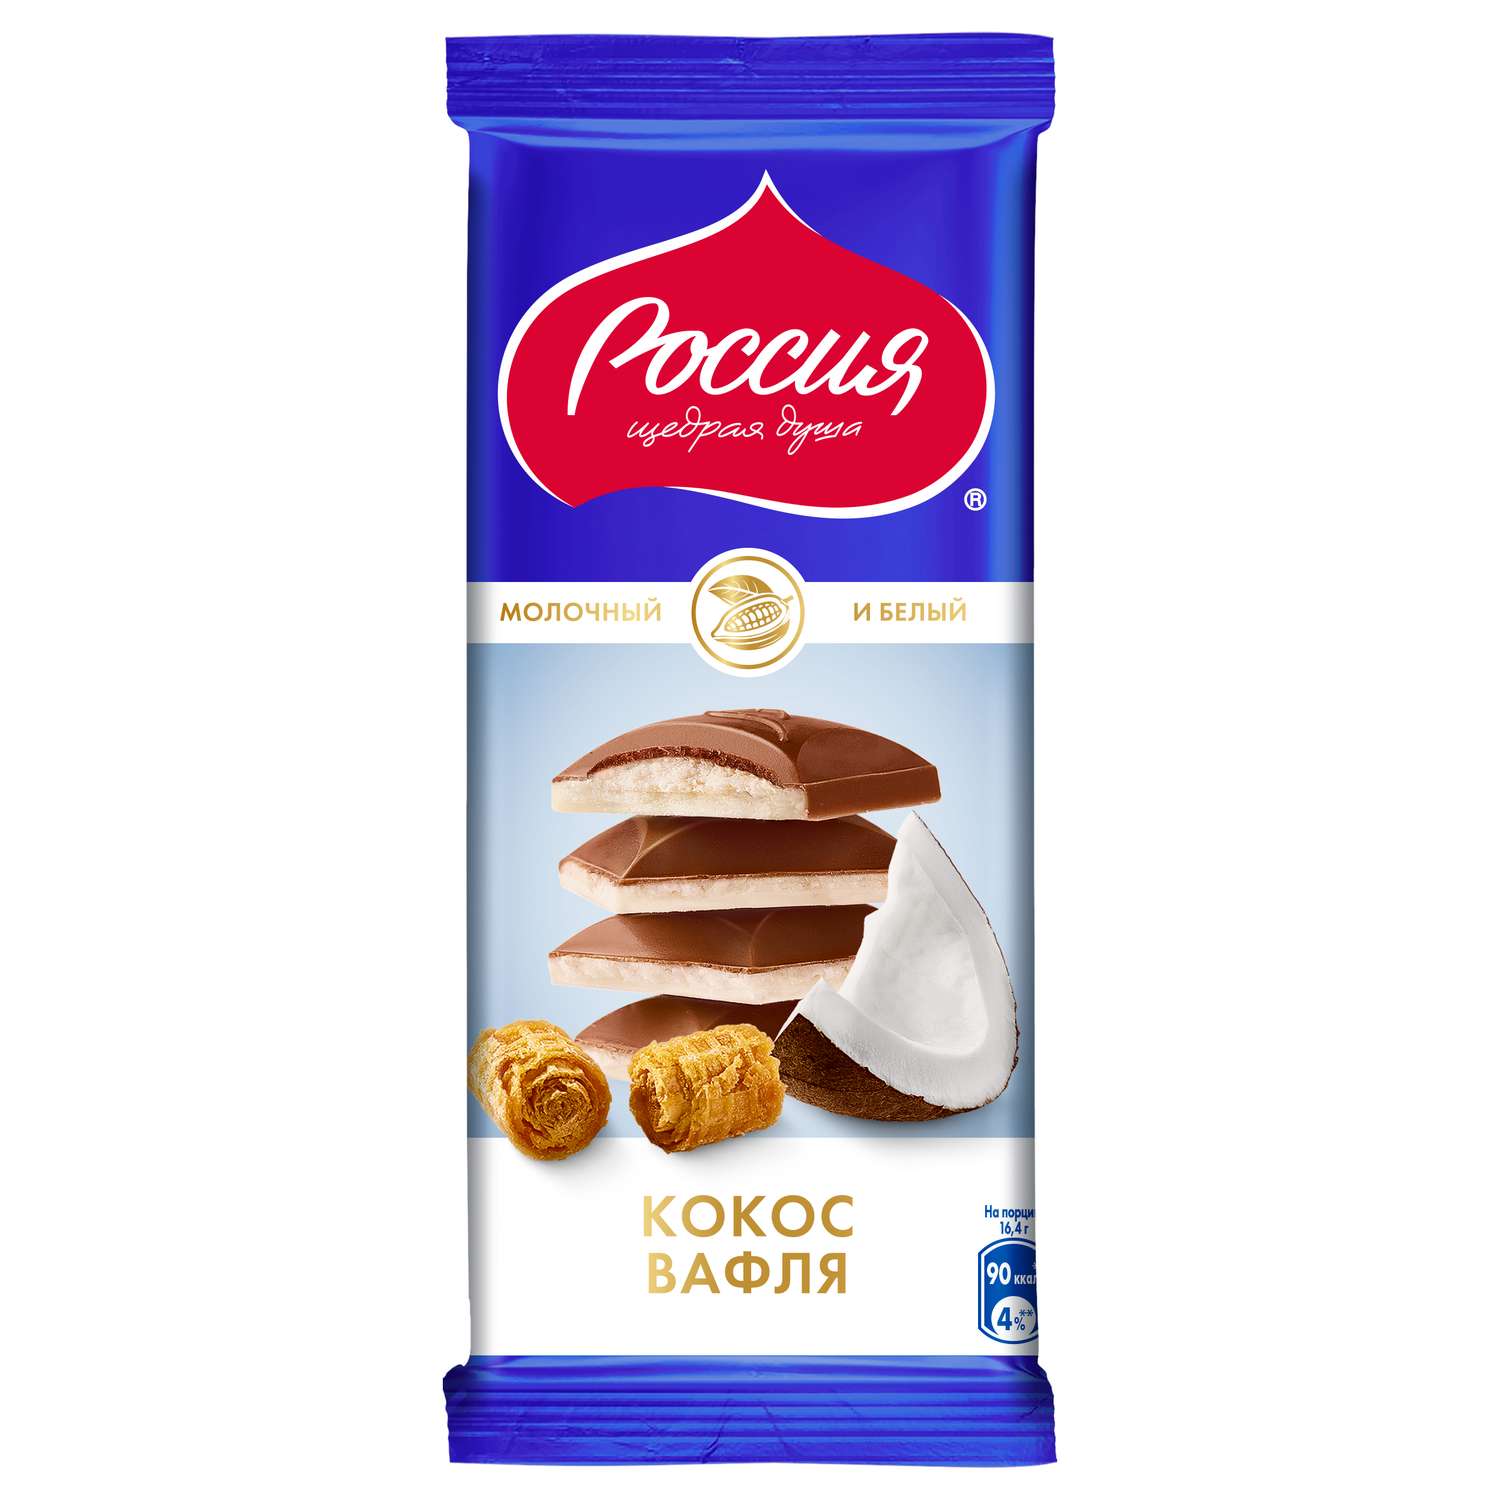 Шоколад Россия-щедрая душа! молочный белый кокос 82г - фото 1